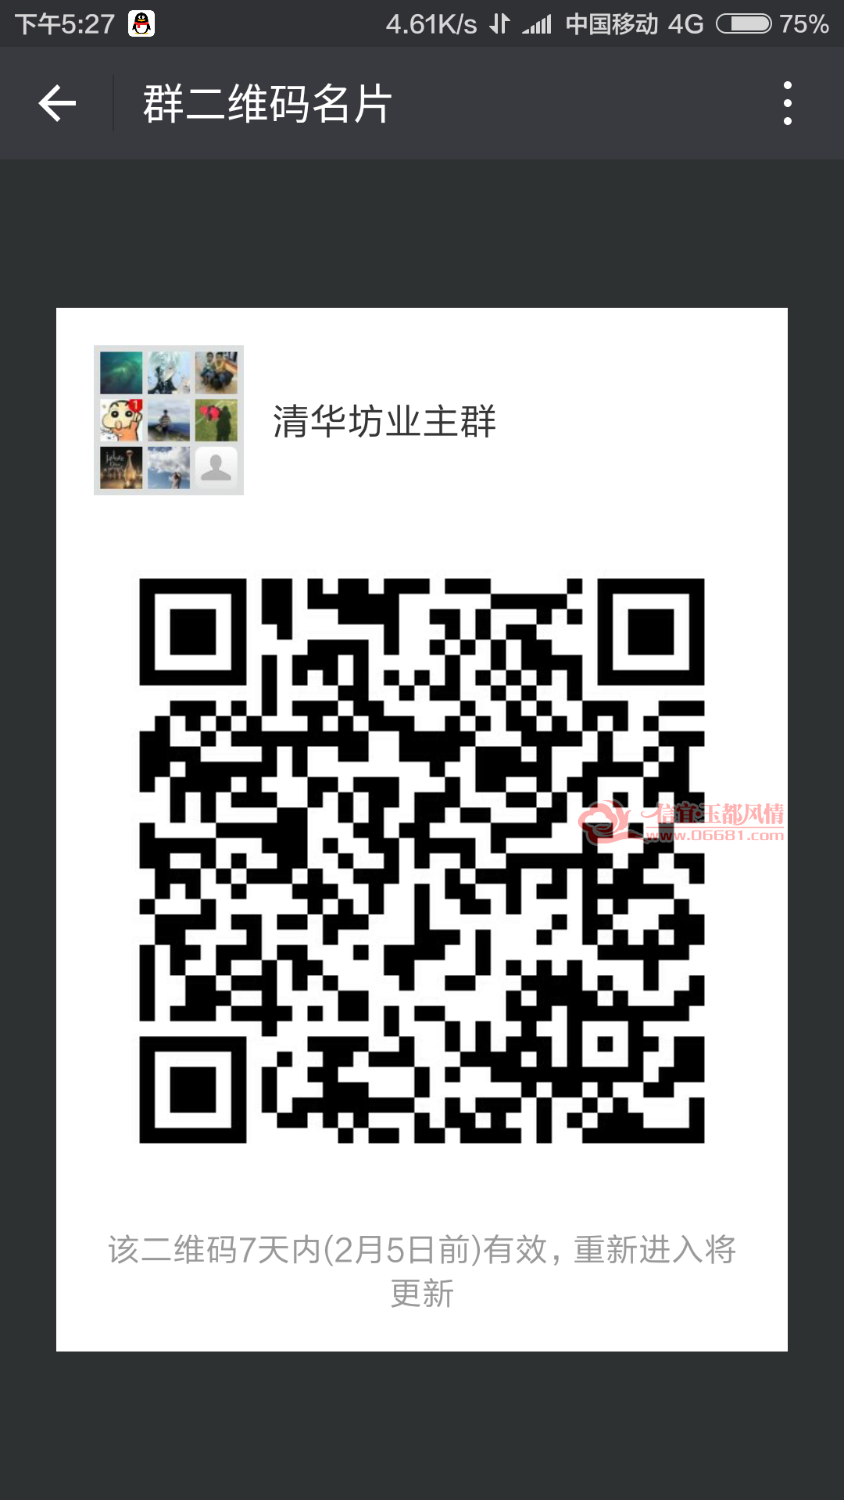 Screenshot_2018-01-29-17-27-50_com.tencent.mm.png